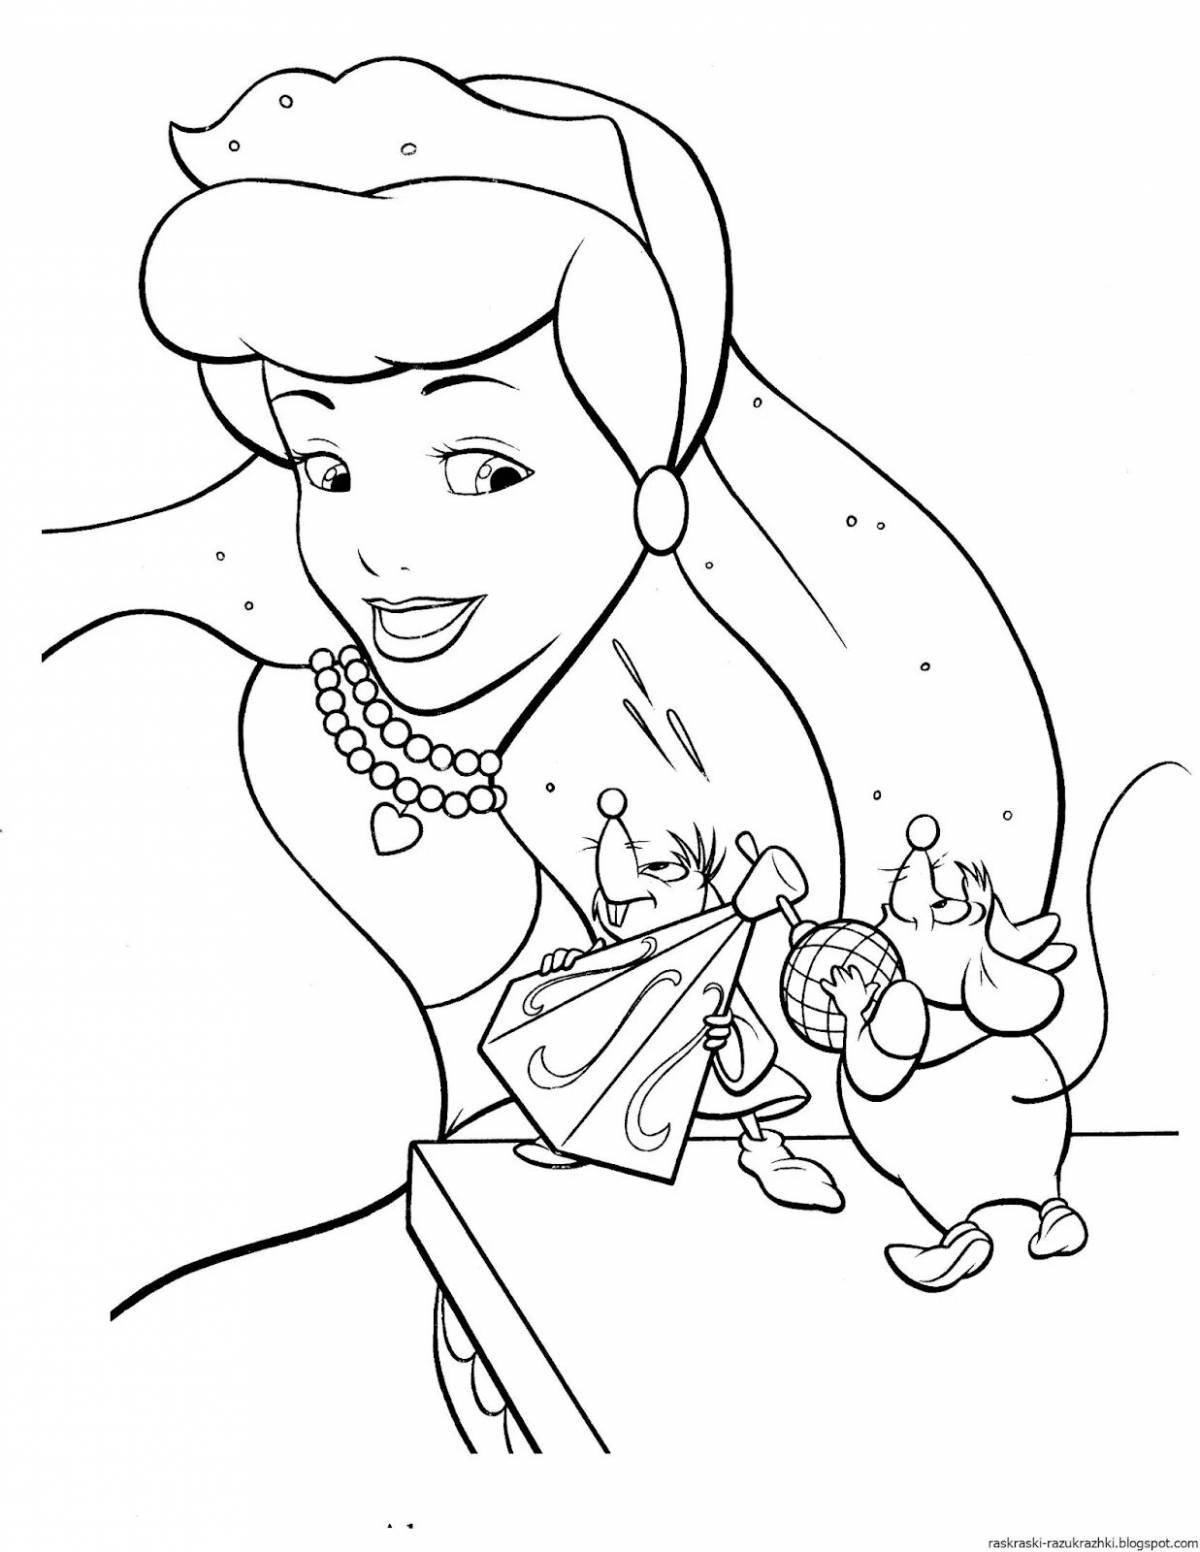 Cute Cinderella coloring book for preschoolers